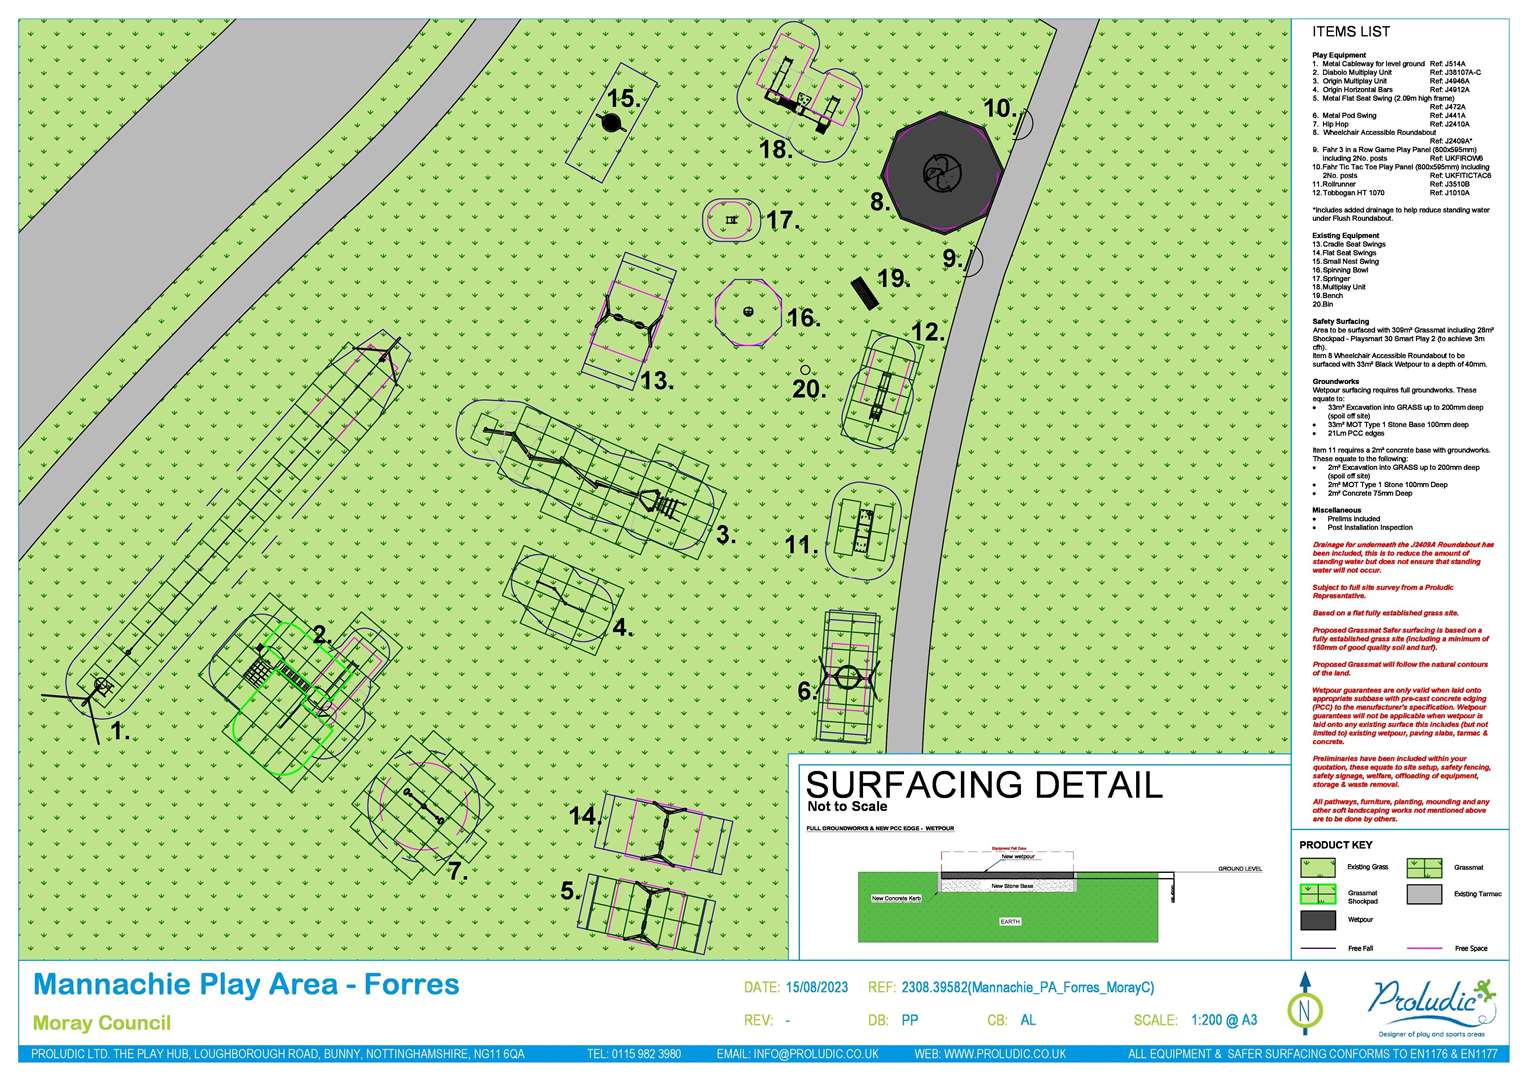 The Mannachie Park design layout.